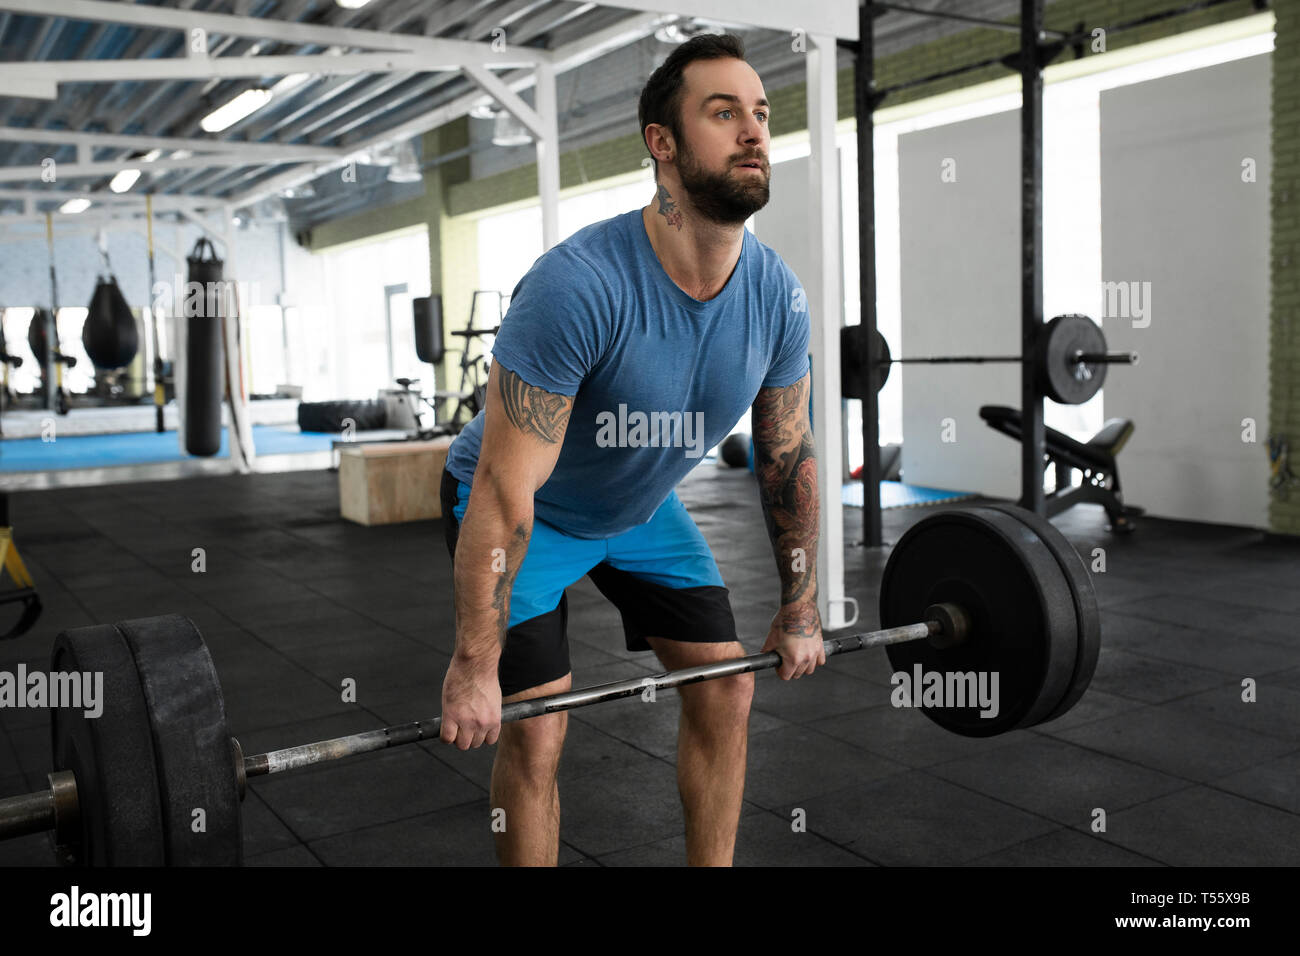 Mitad hombre adulto el levantamiento de pesas en el gimnasio Foto de stock